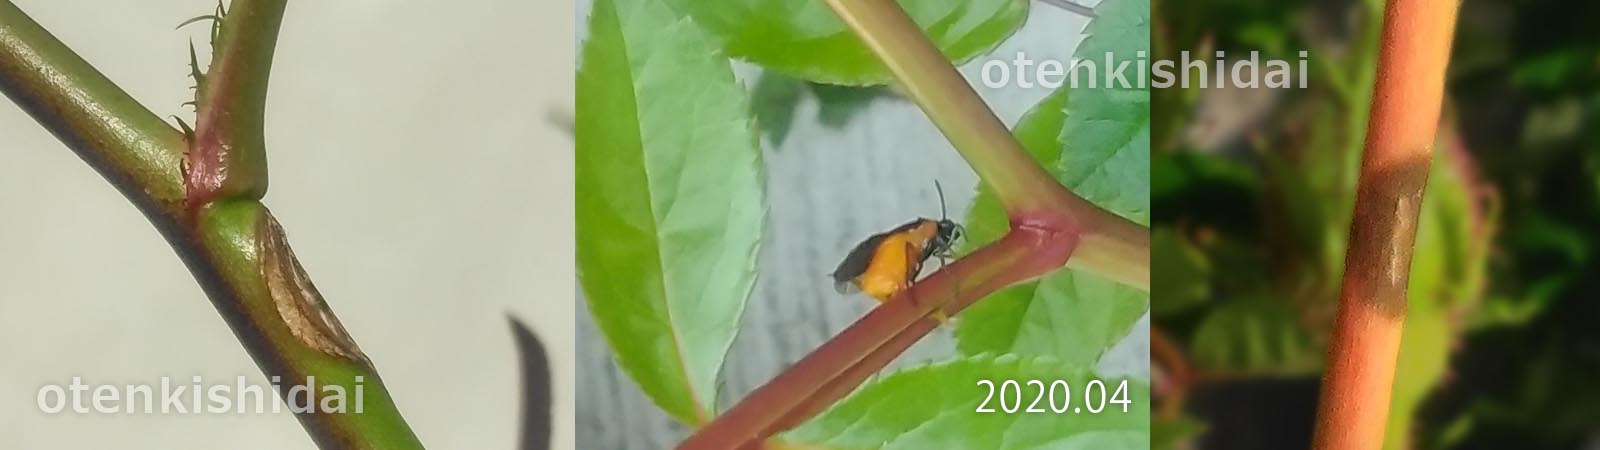 チュウレンジハバチの孵化痕と産卵痕